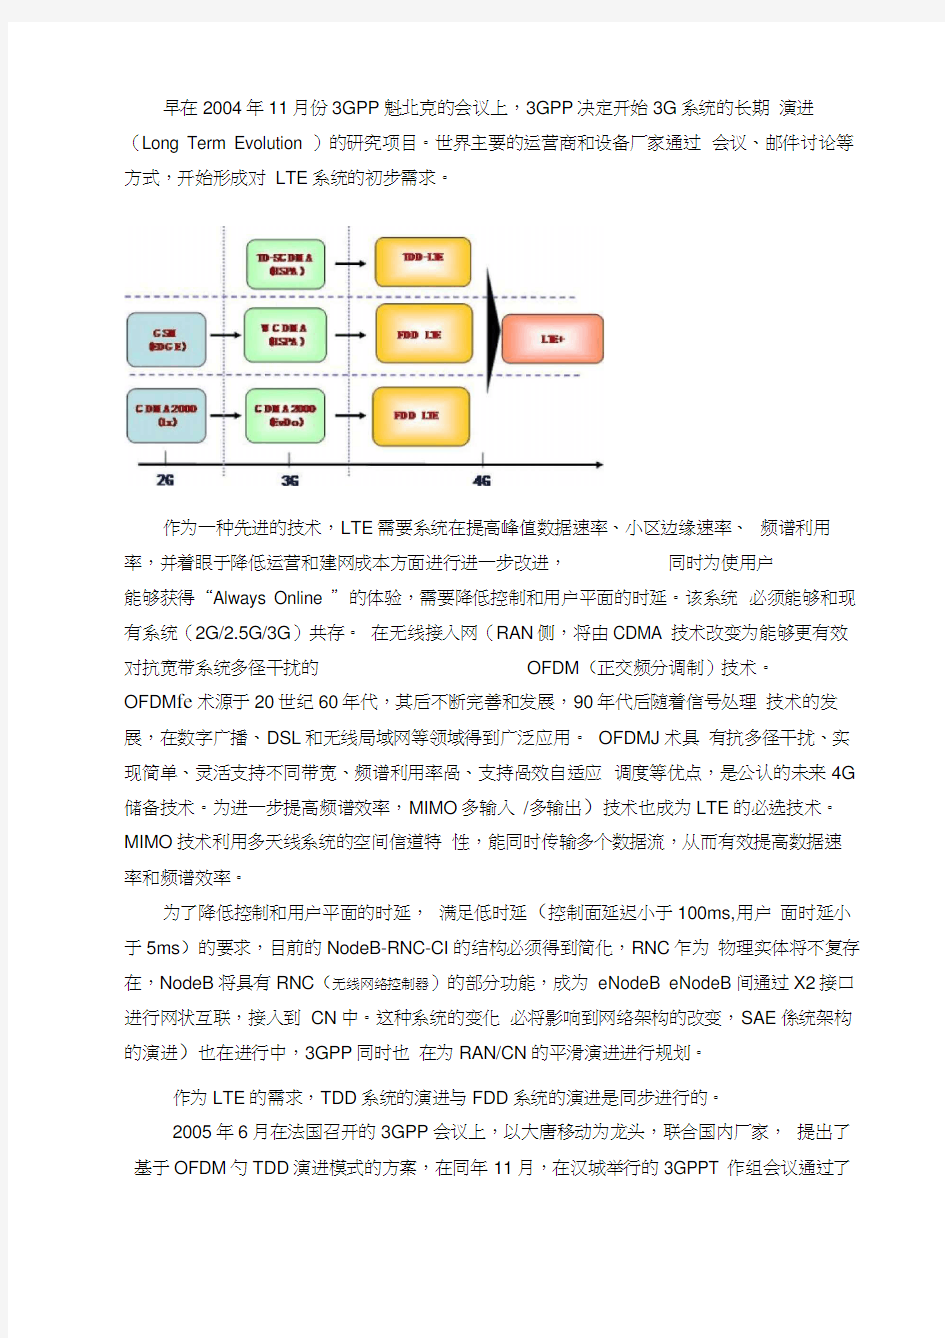 中国移动通信系统第四代技术——TD-LTE